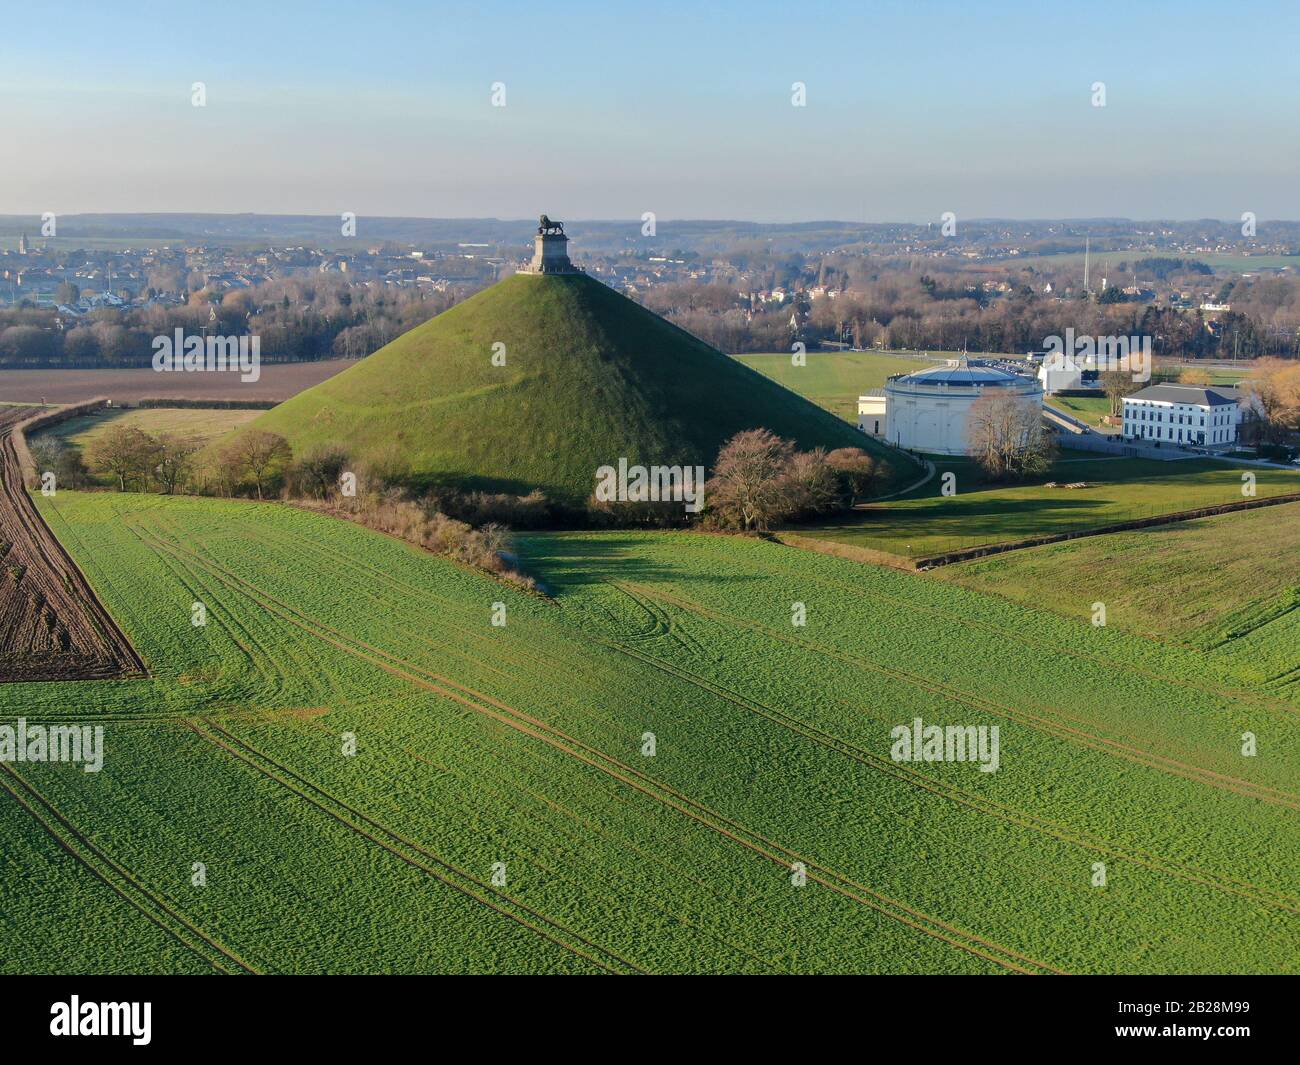 Luftbild des Lion's Mound mit Bauernland. Der riesige Butte Du Lion auf dem Schlachtfeld von Waterloo, auf dem Napoleon starb. Belgien. Stockfoto